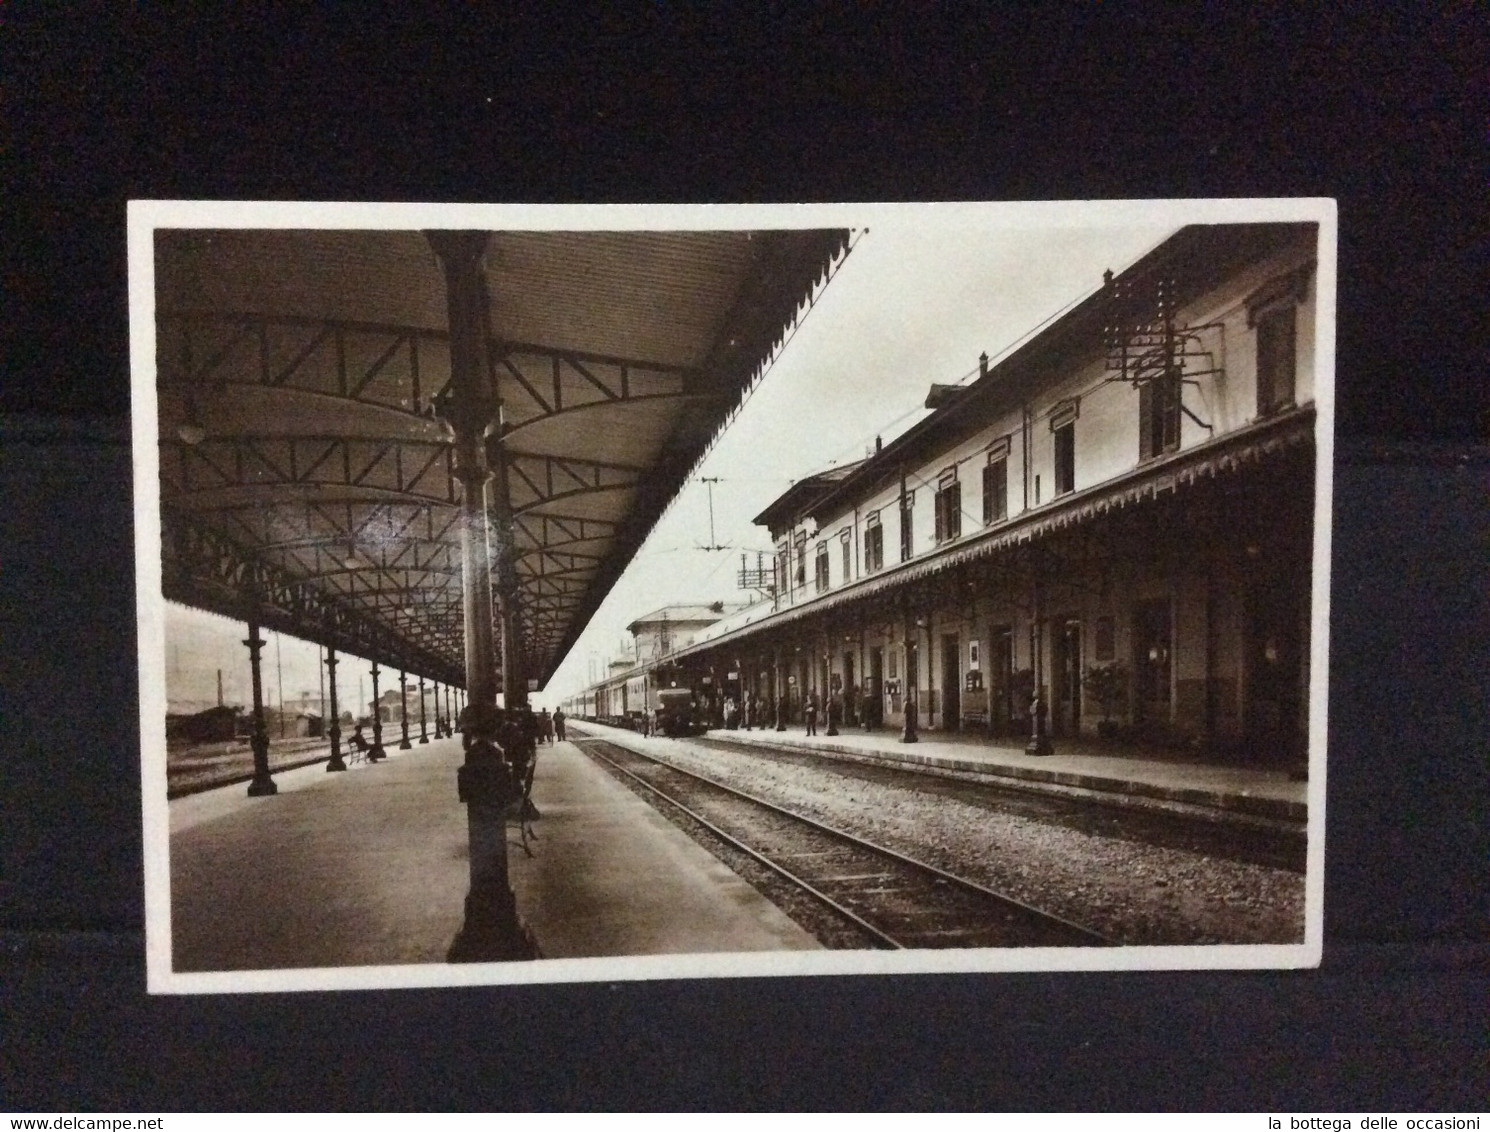 Domodossola Torino Piemonte Interno Stazione Ferroviaria Primi 900 - Museos